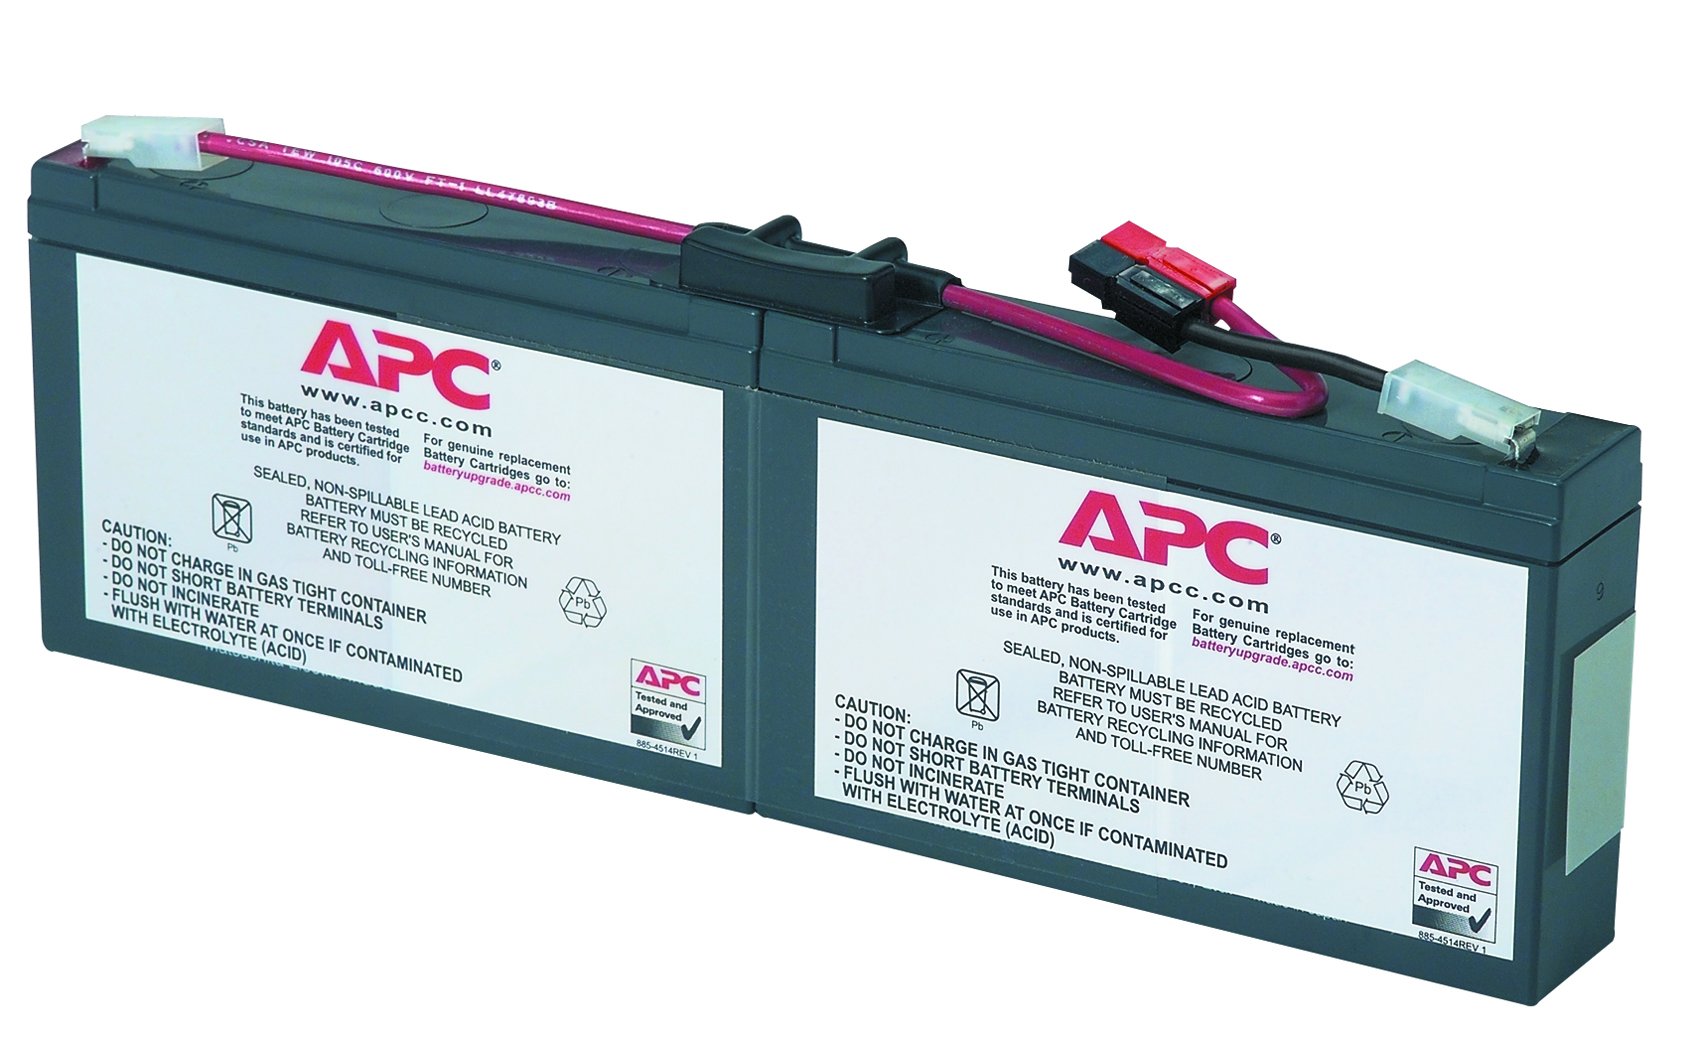 Apc ups battery. Smart ups SC 450 аккумуляторы. Аккумуляторная батарея APC rbc5. APC аккумуляторы для ИБП. Батарея для ИБП APC rbc18.